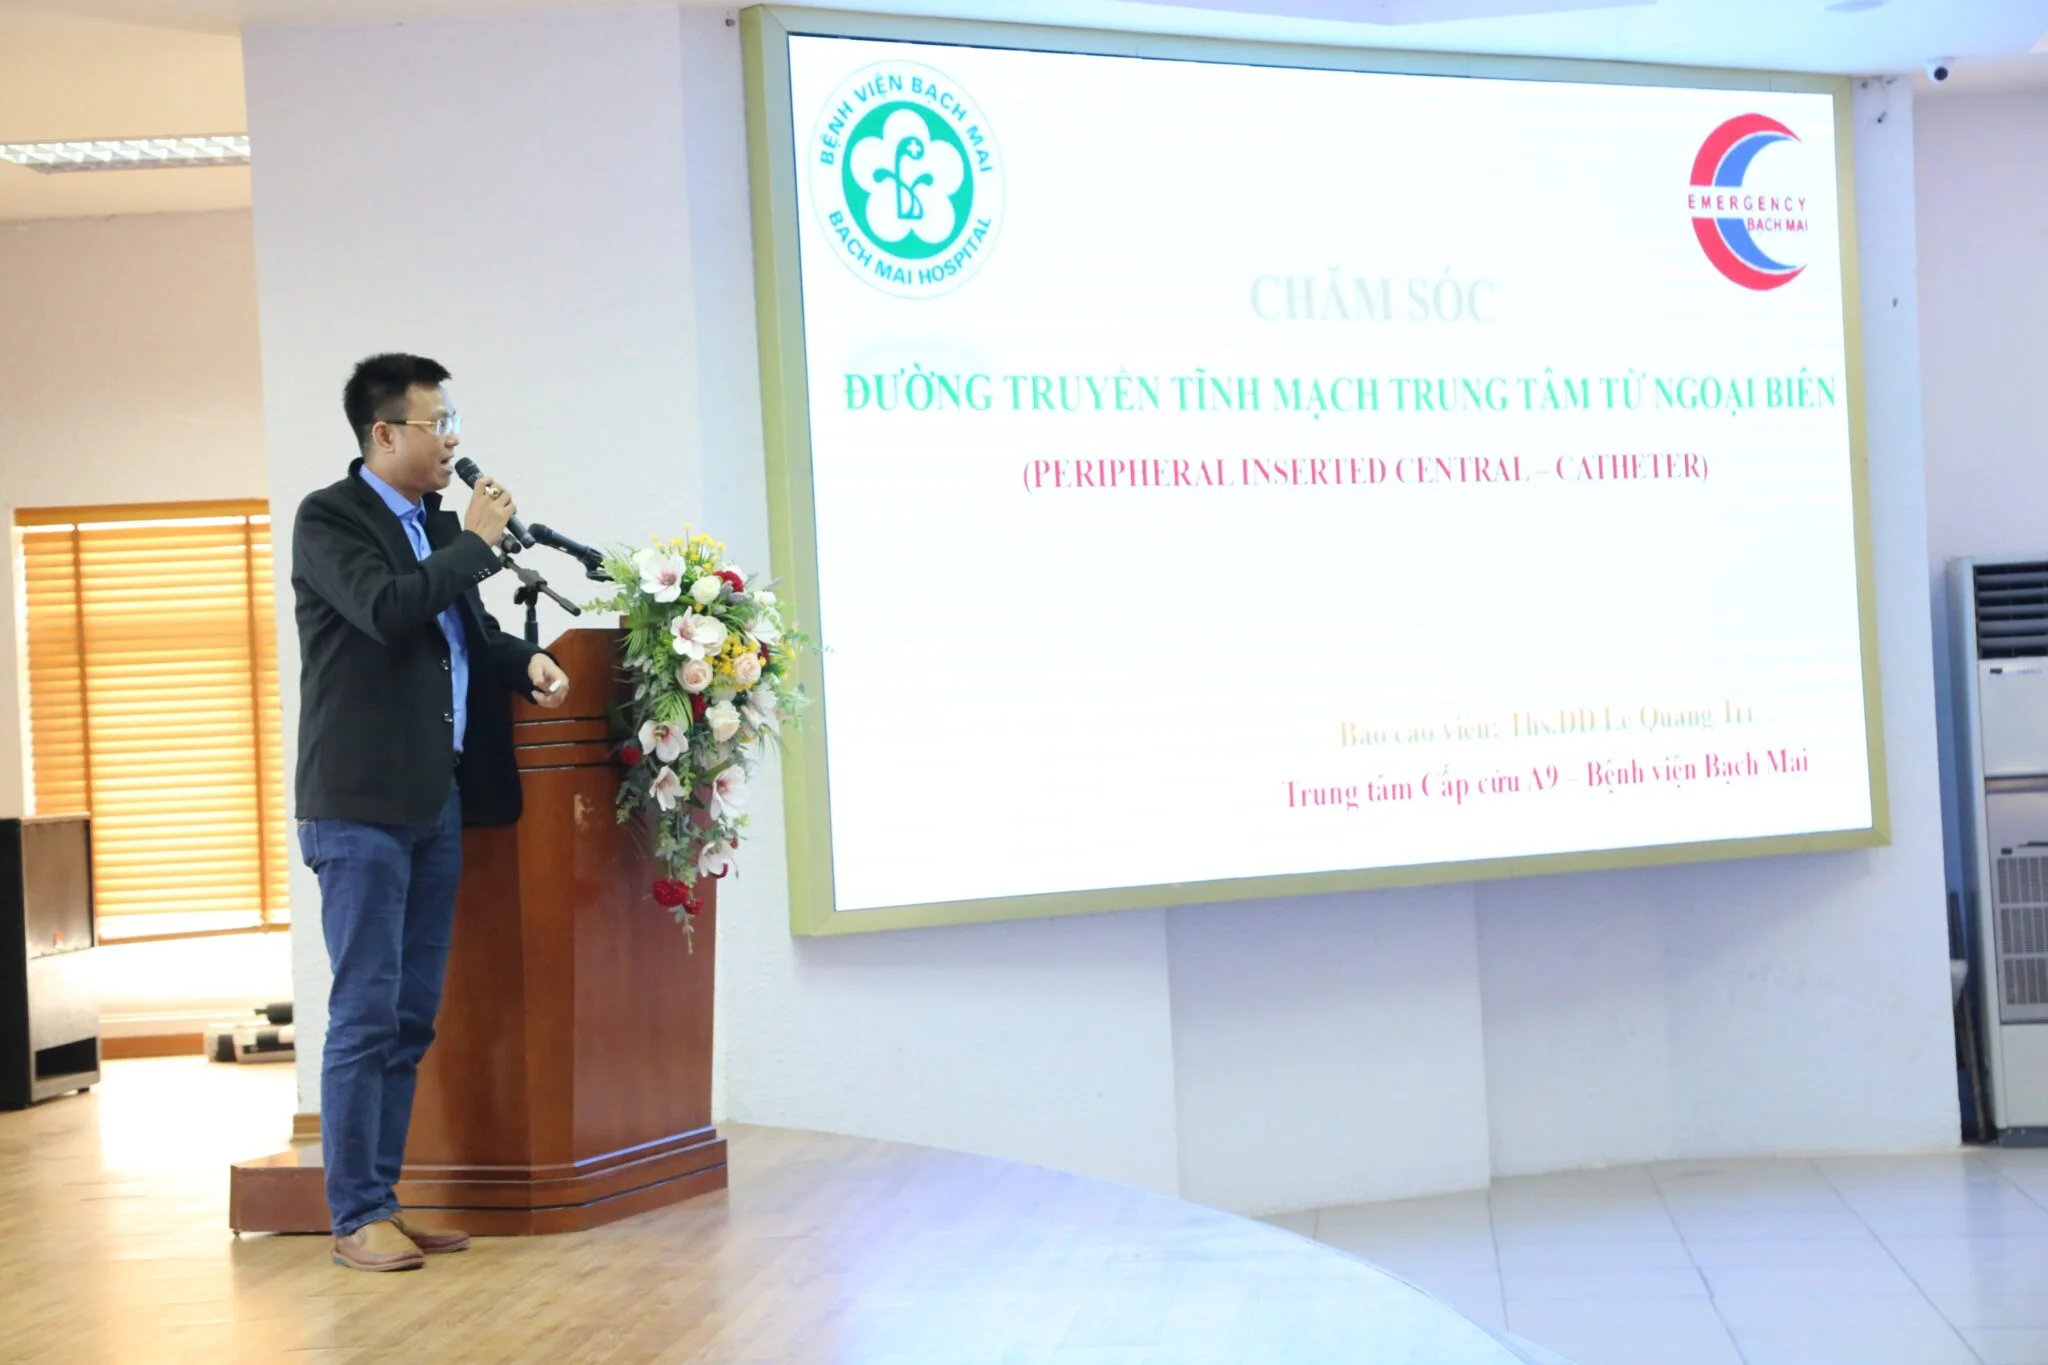 Ths.ĐD Lê Quang Trí – Trung tâm cấp cứu A9 - Bệnh viện Bạch Mai trình bày bài báo cáo